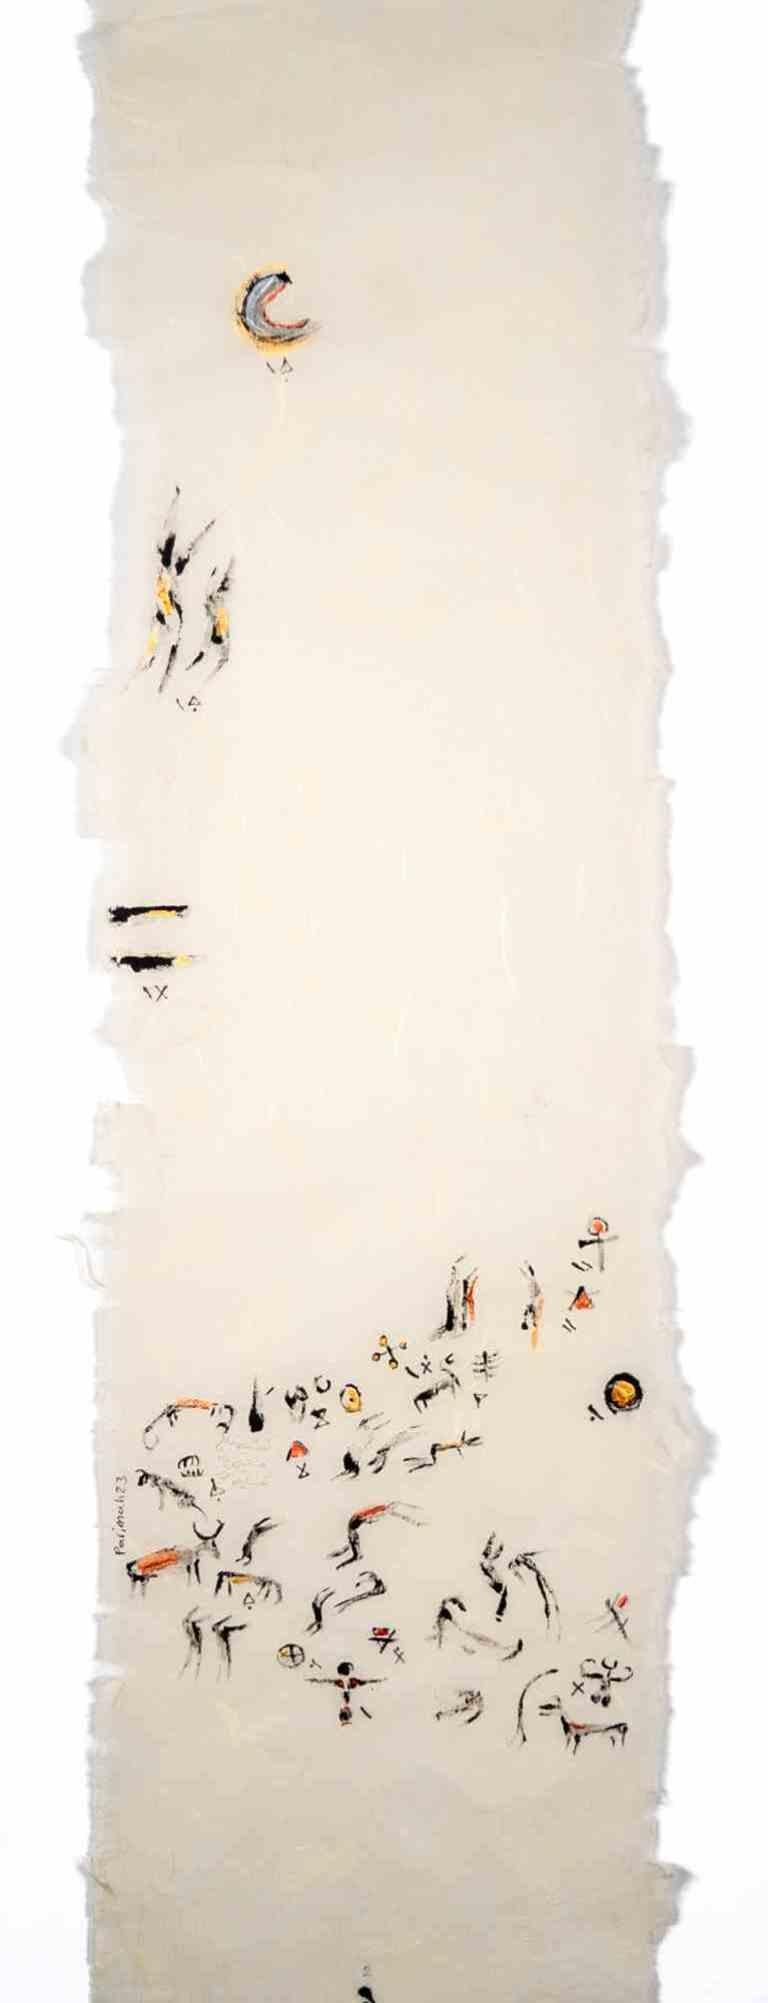 First Couple, First Moon ist eine Zeichnung der iranischen Künstlerin und Dichterin Parimah Avani aus dem Jahr 2023.

China-Tusche, Acryl auf japanischem Washi Haruki-Papier mit aufgetragenem Papyrus, Plettenberg, DE.

Ausgestellt in "Heroine's